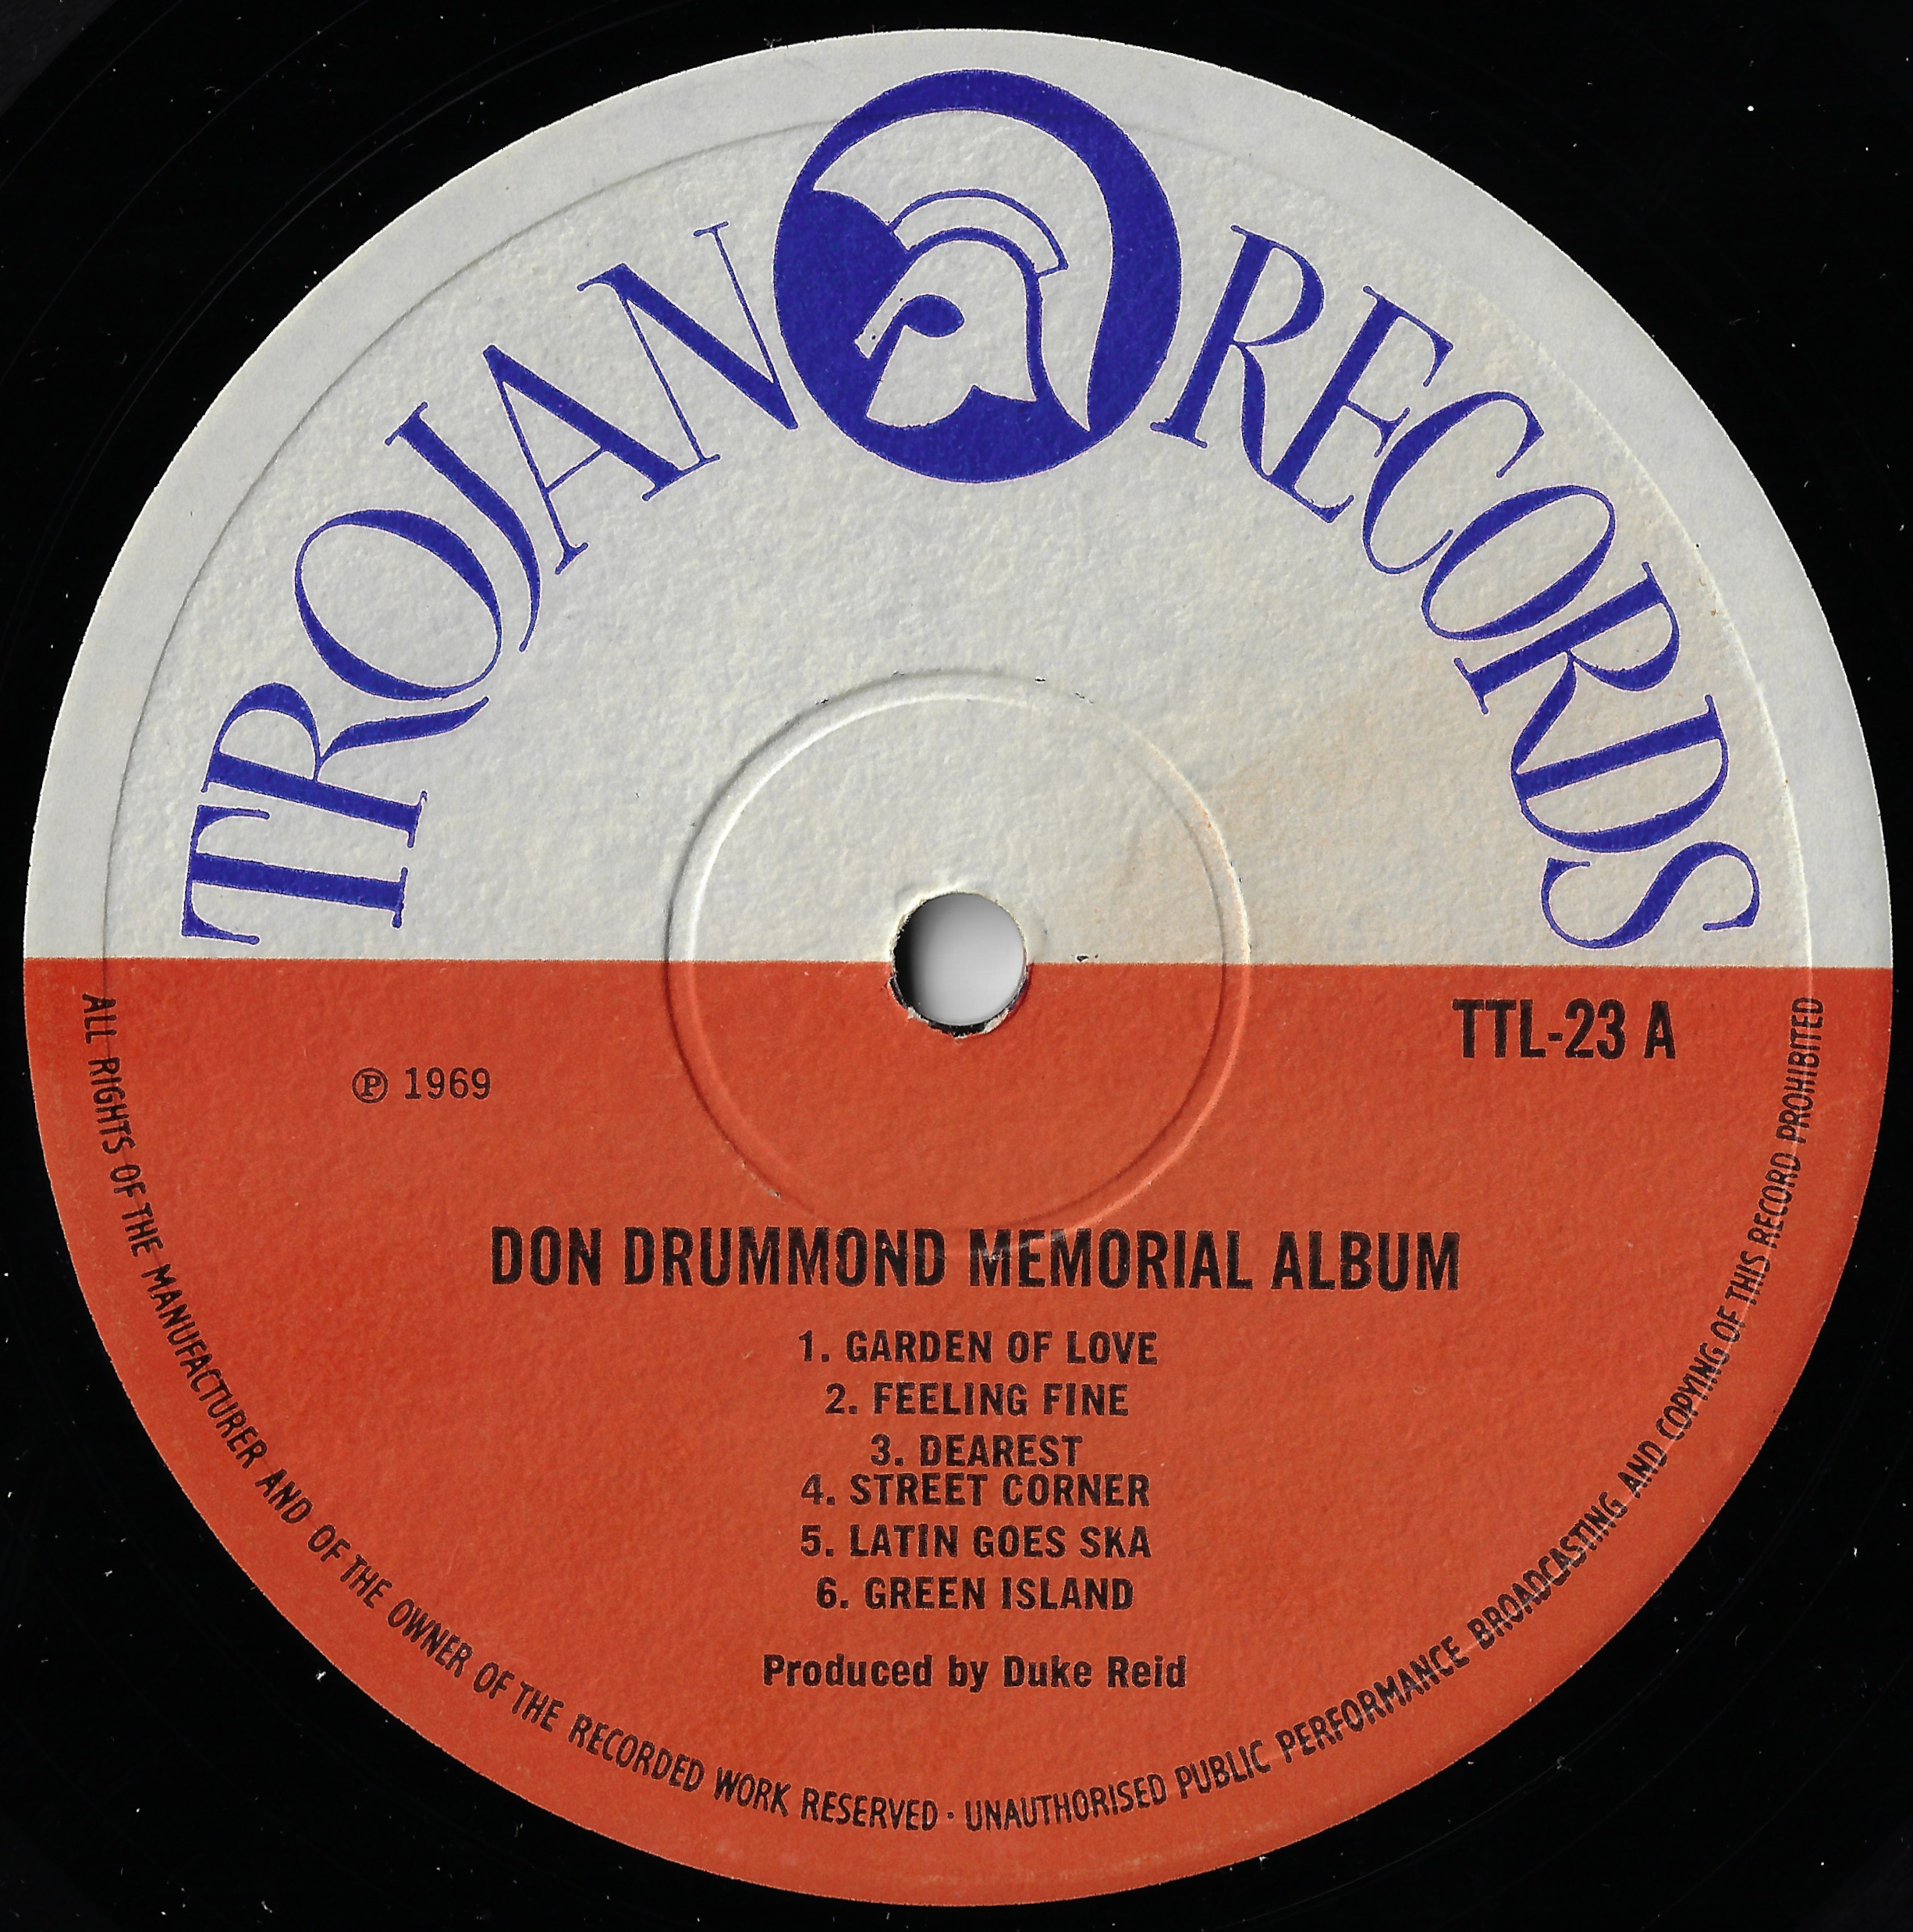 Memorial Album - Don Drummond